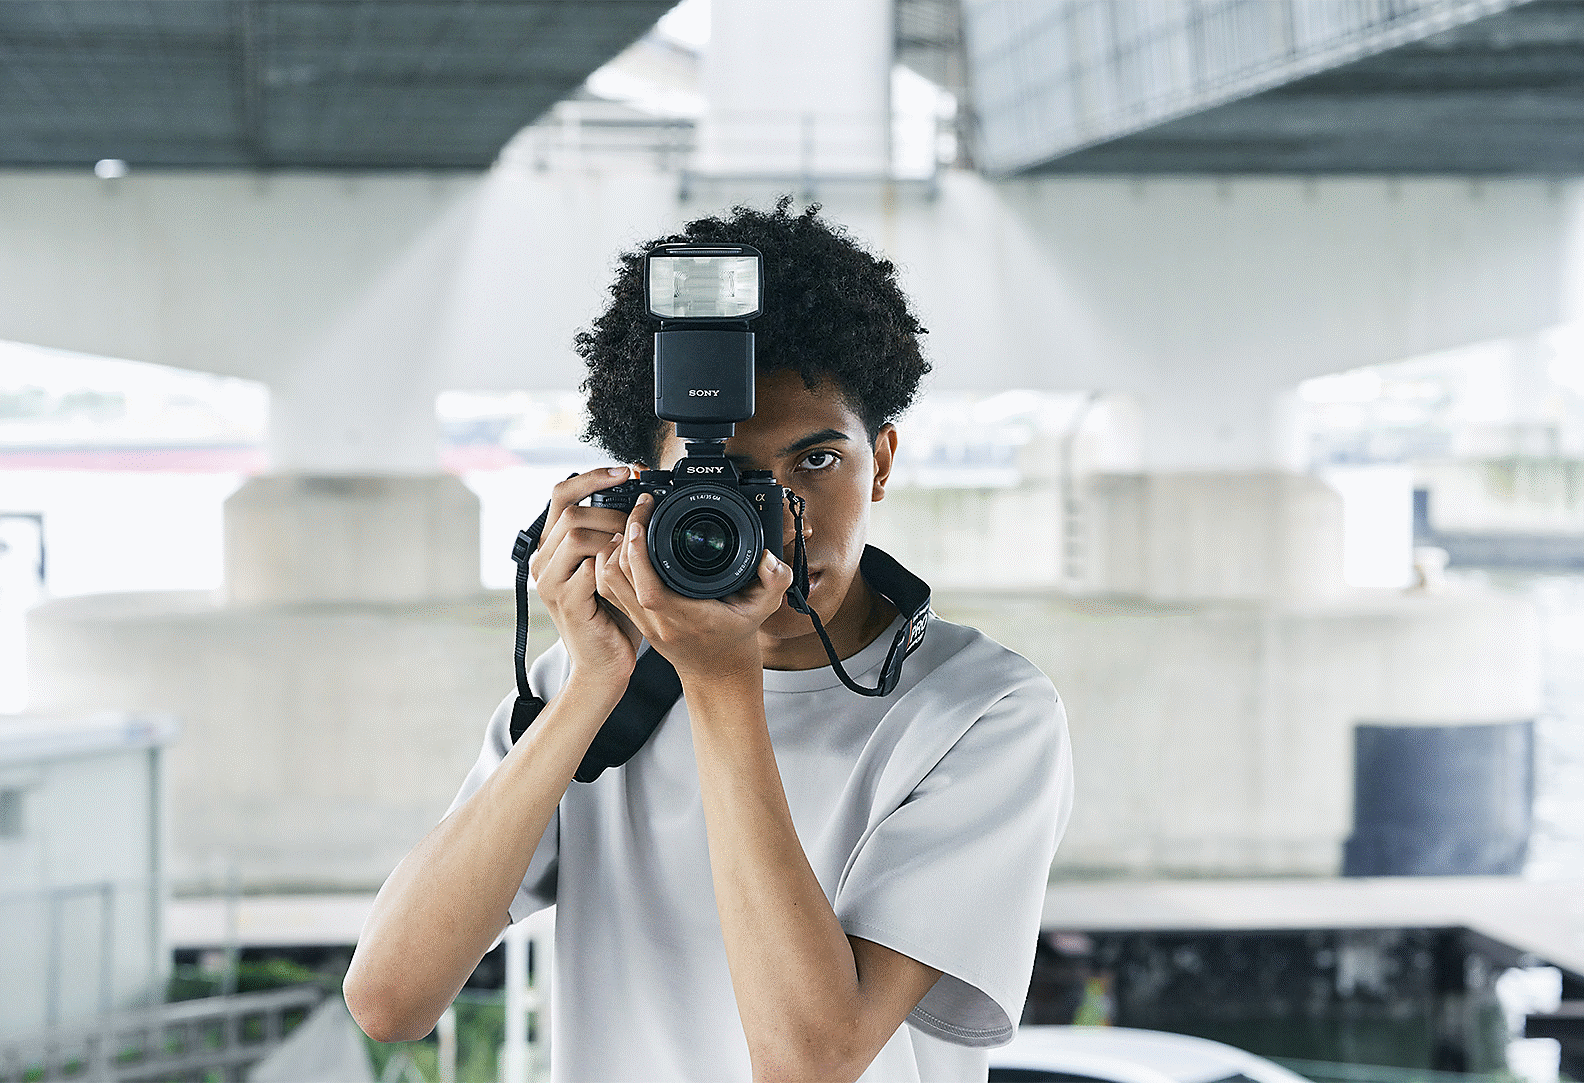 Žmogaus, prieš save laikančio kamerą su blykste, vaizdas su miesto vaizdu fone